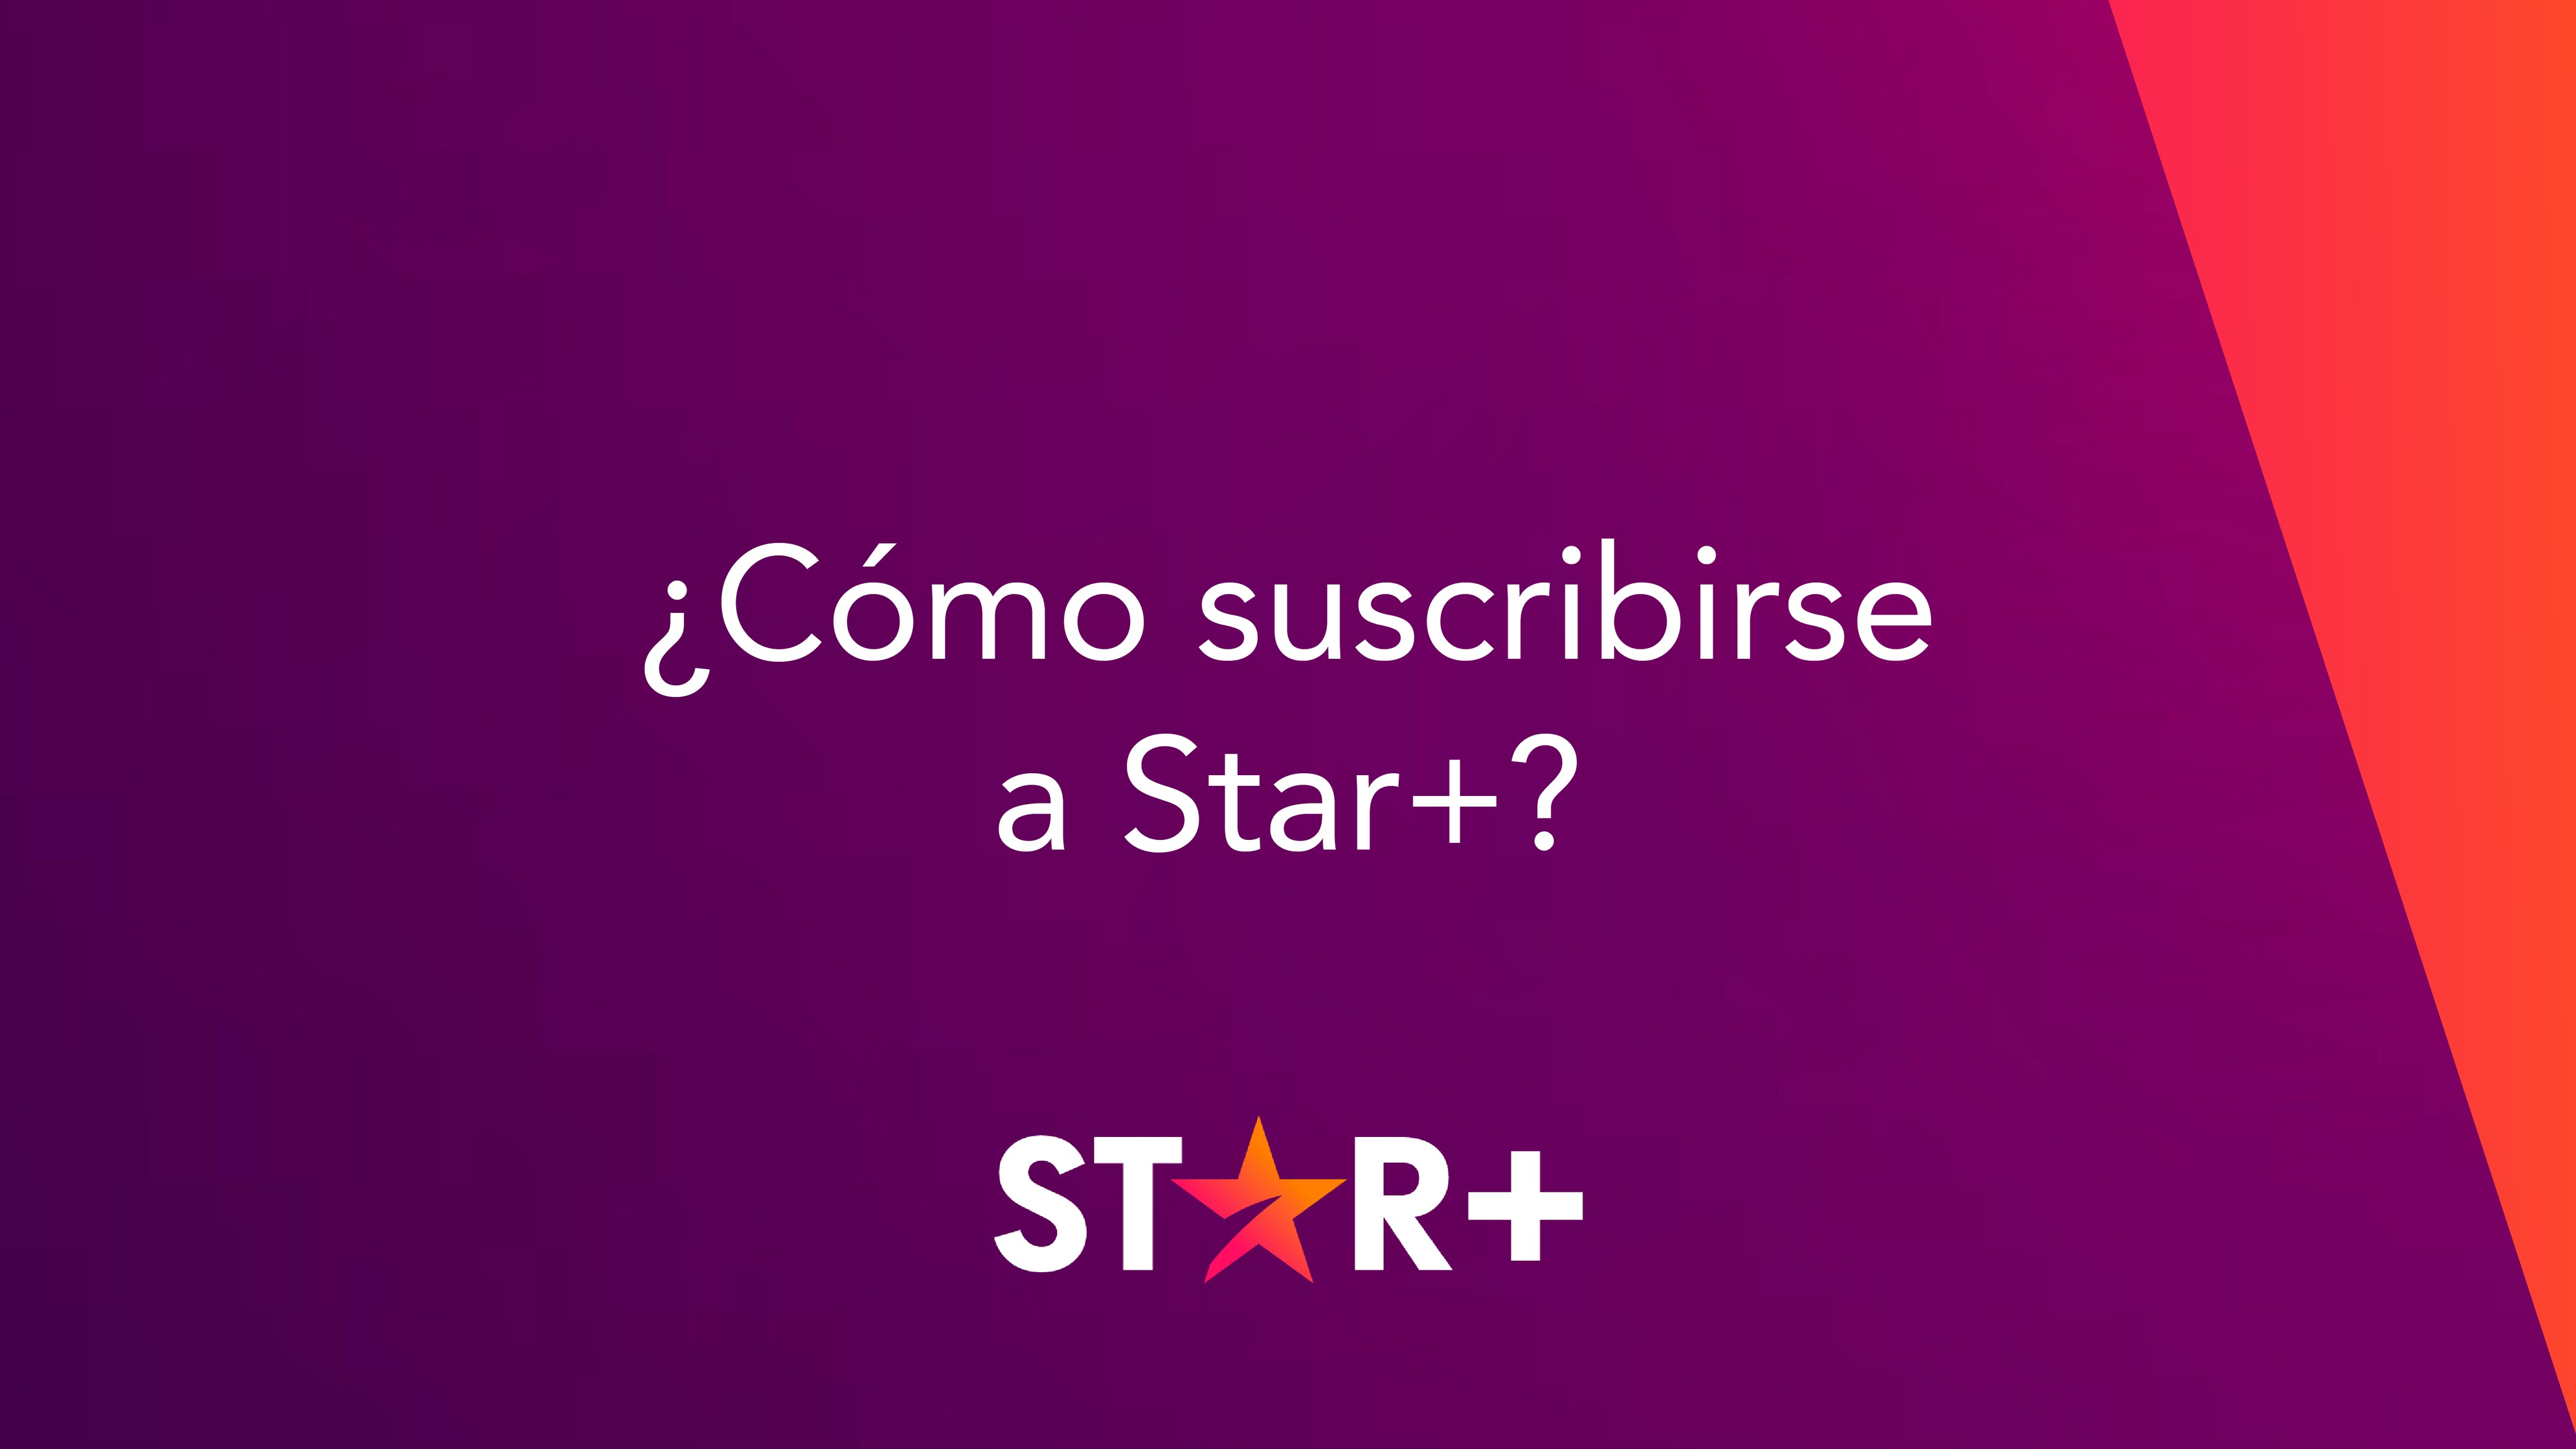 Cómo suscribirse a Star+: paso a paso